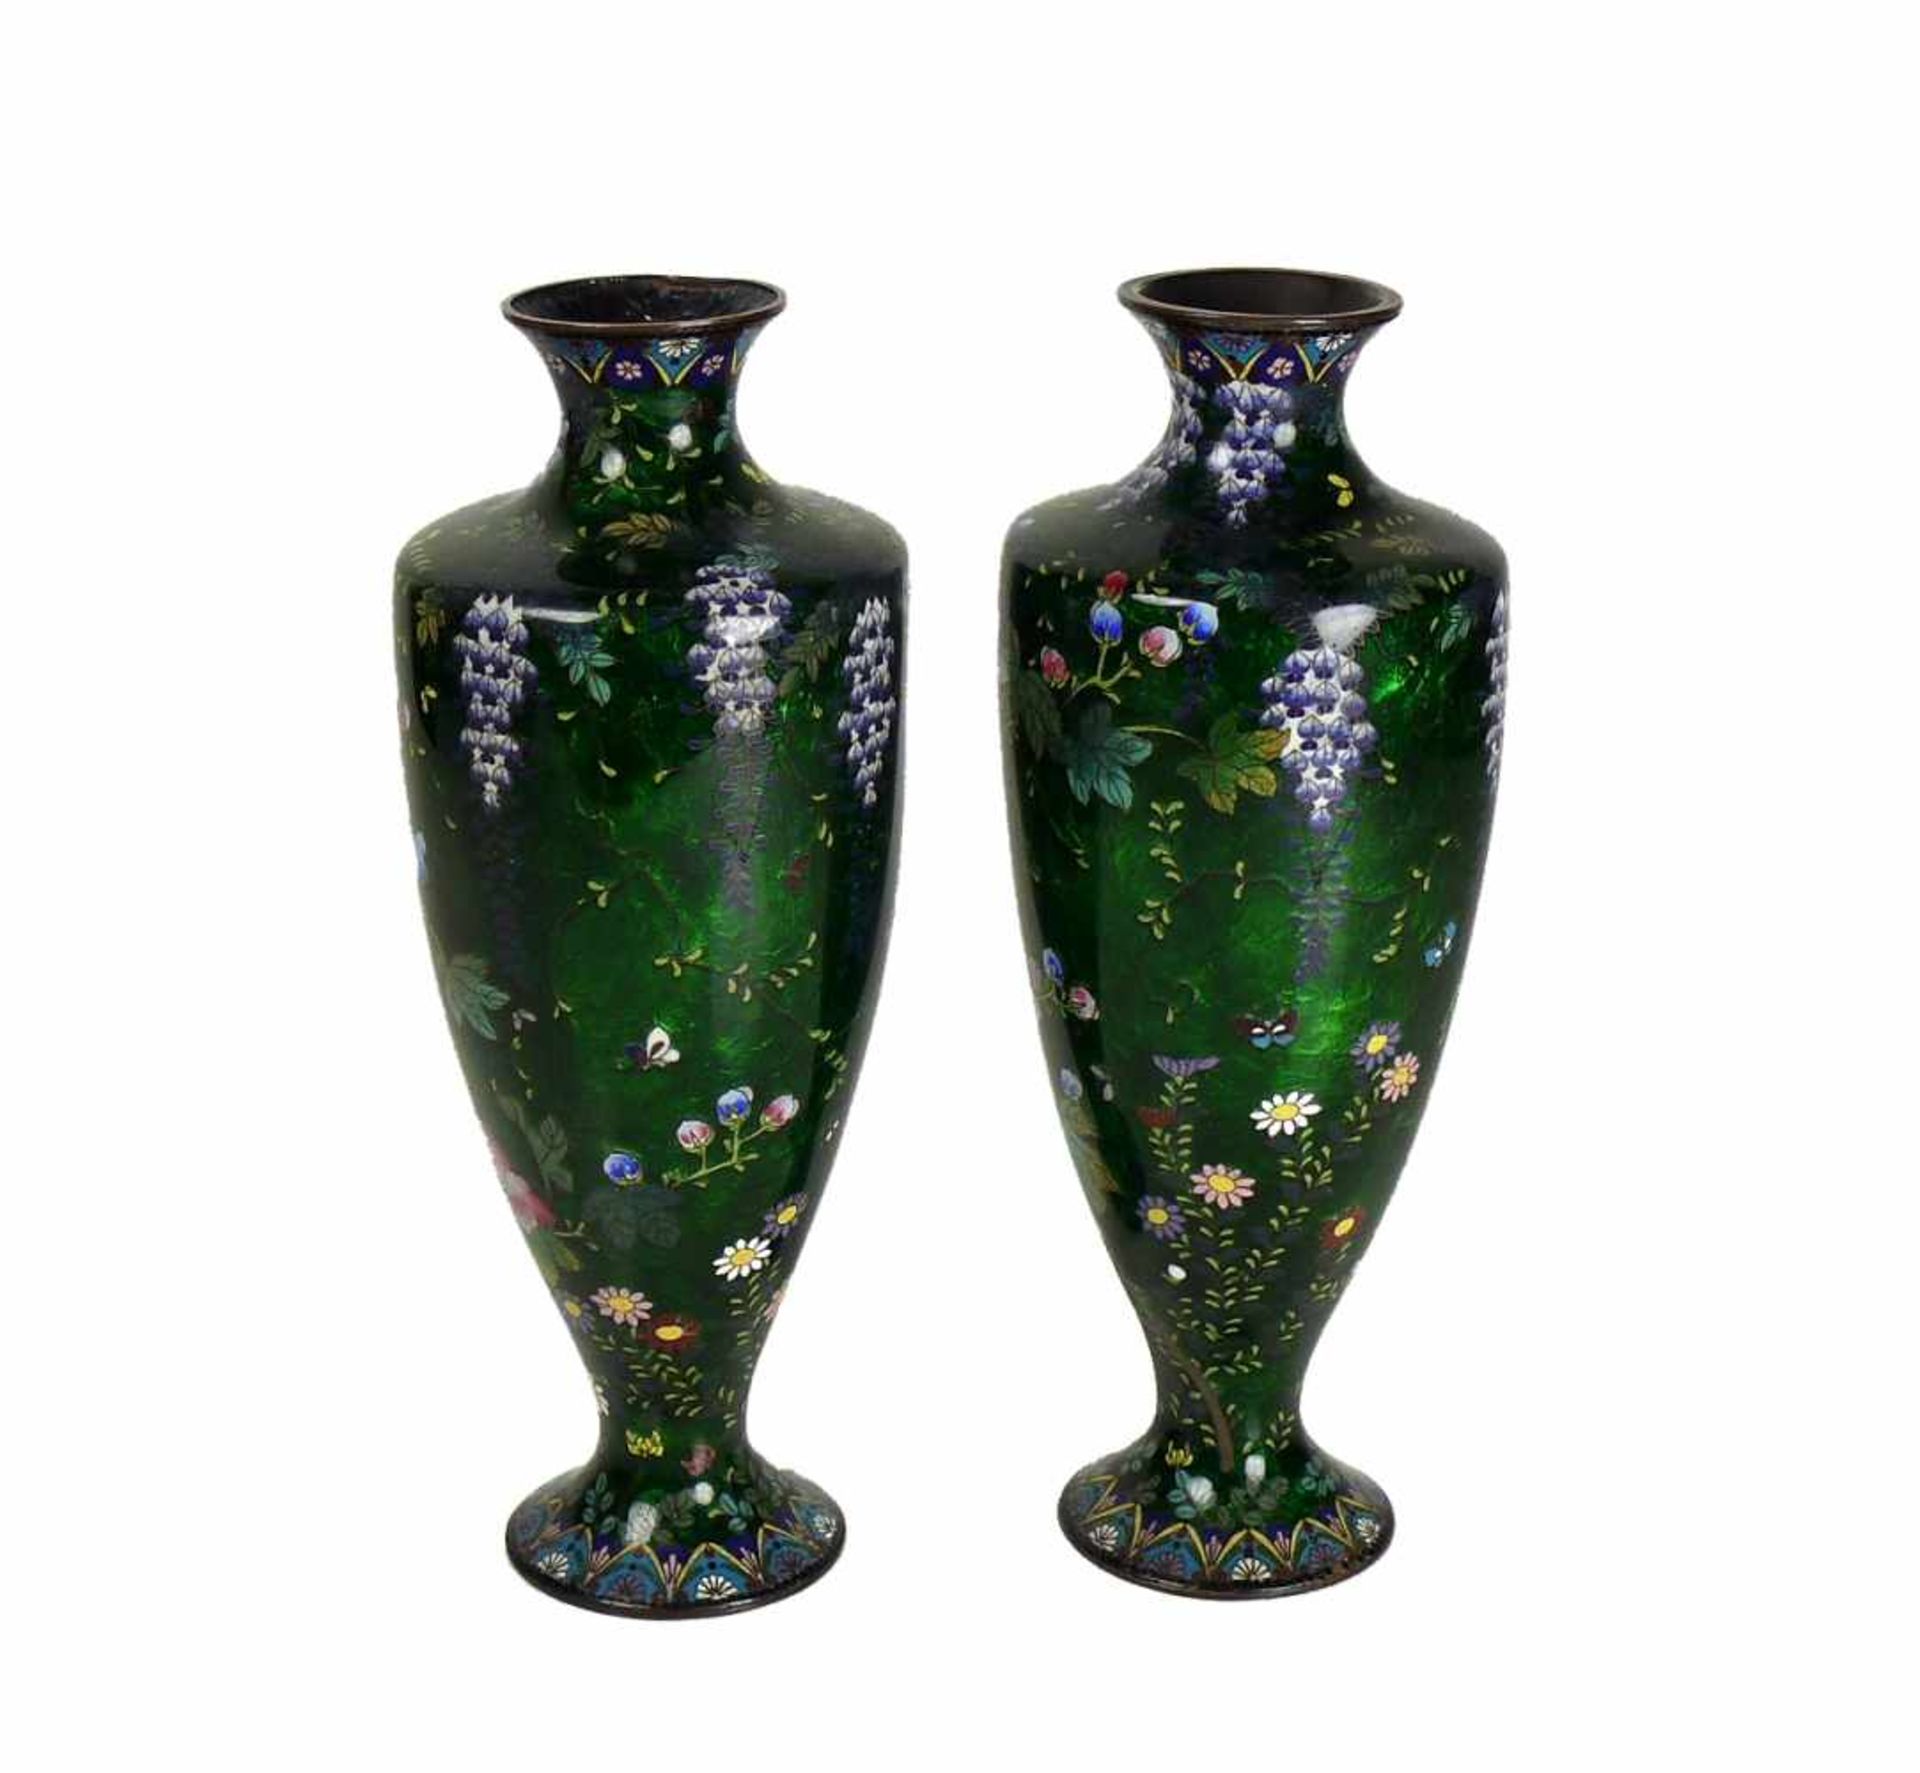 Paar Cloisonné-Vasen (China, um 1900)auf grünem Grund Blüten- und Insektendekor in farbigem Email;